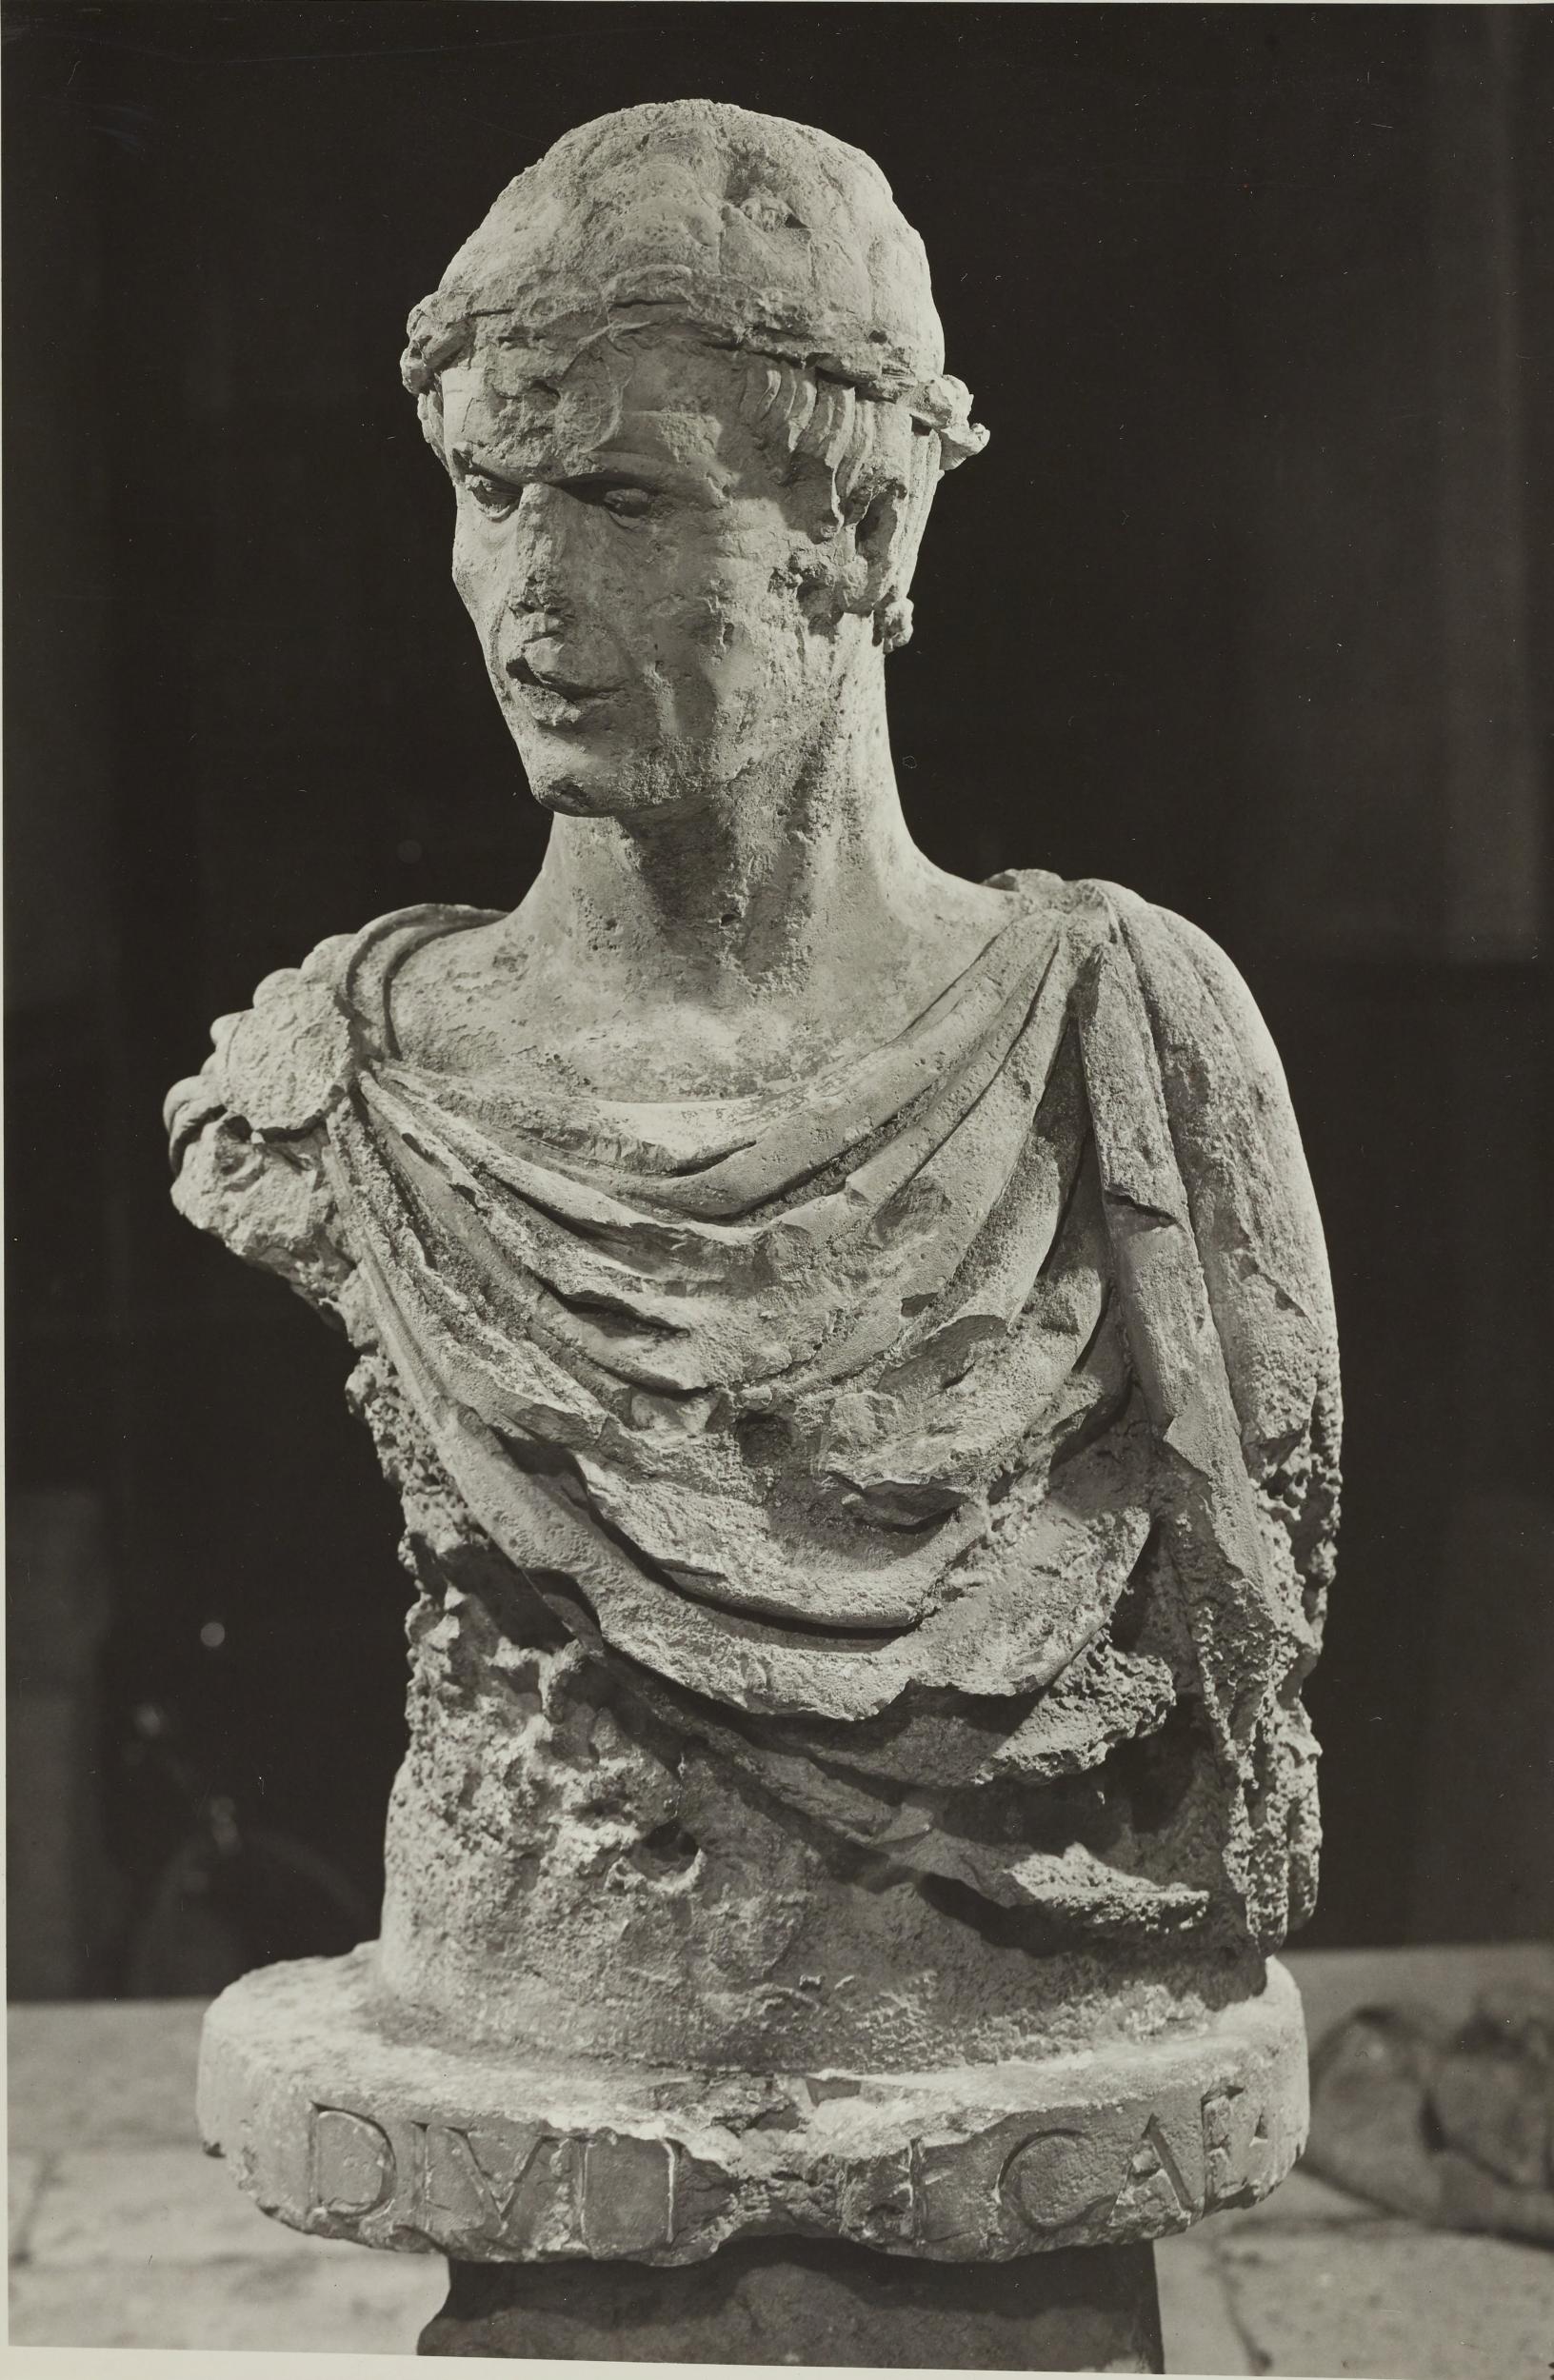 Fotografo non identificato, Barletta - Castello, Museo Civico, busto detto di Federico II, 1953–1954, gelatina ai sali d'argento/carta, MPI6023052